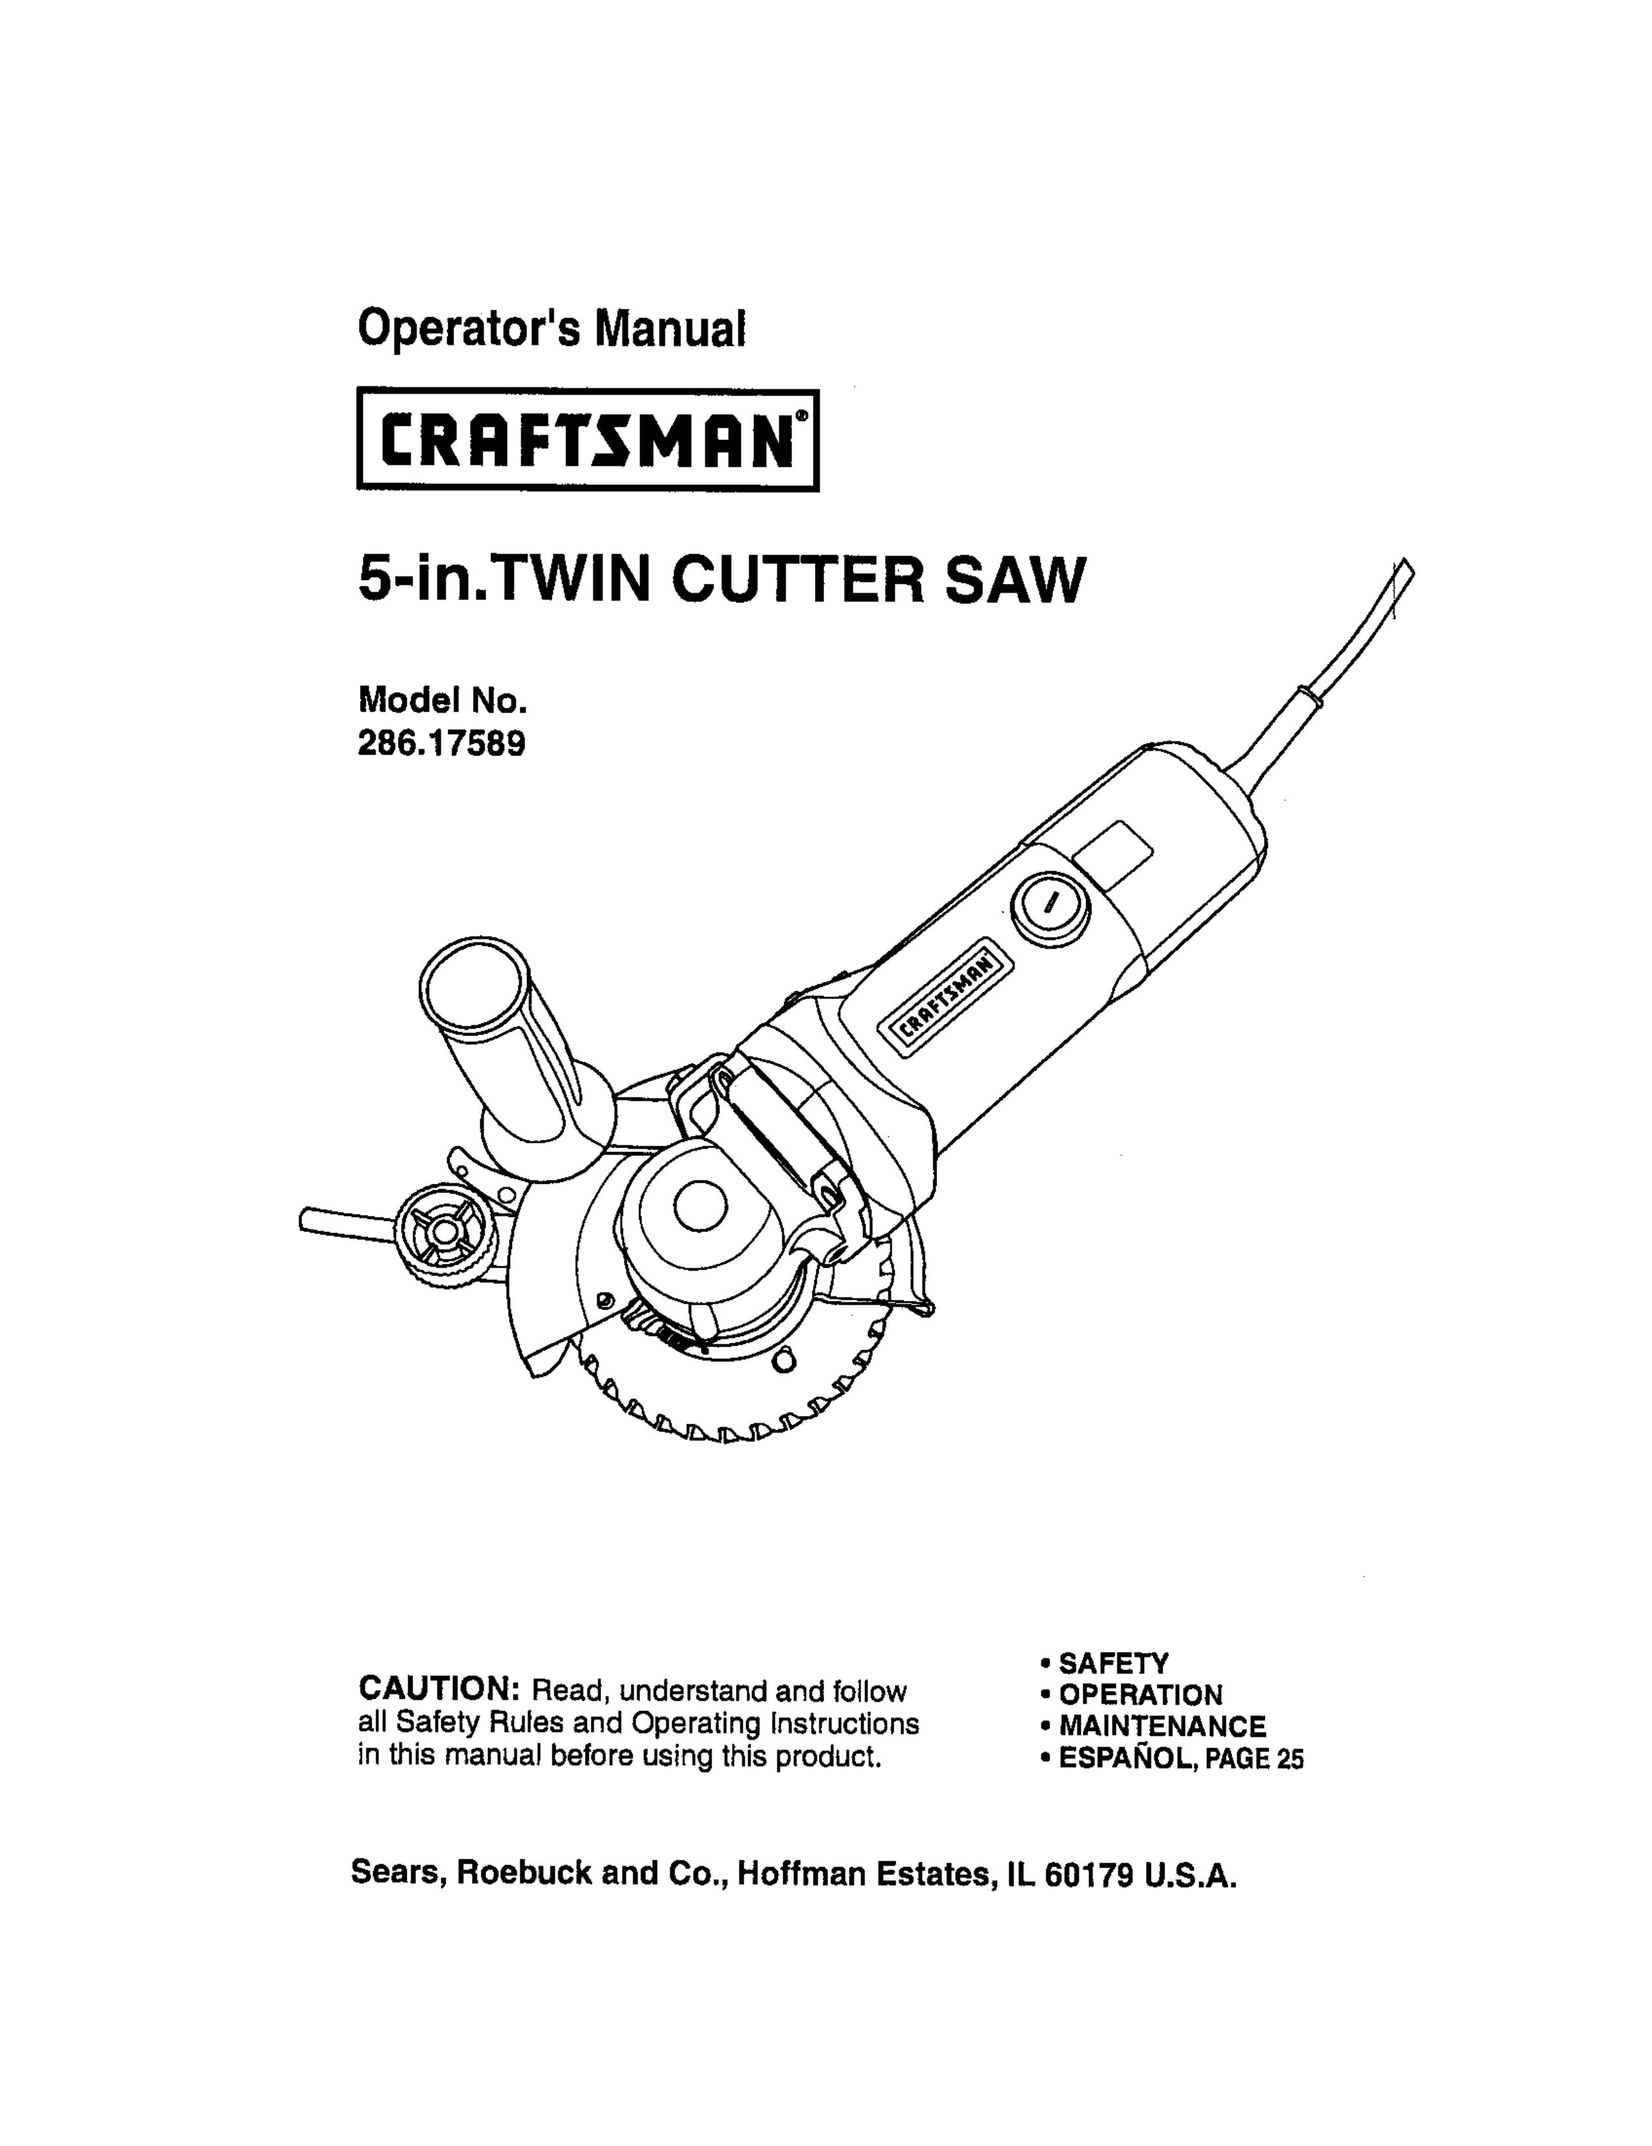 Craftsman 286.17589 Saw User Manual